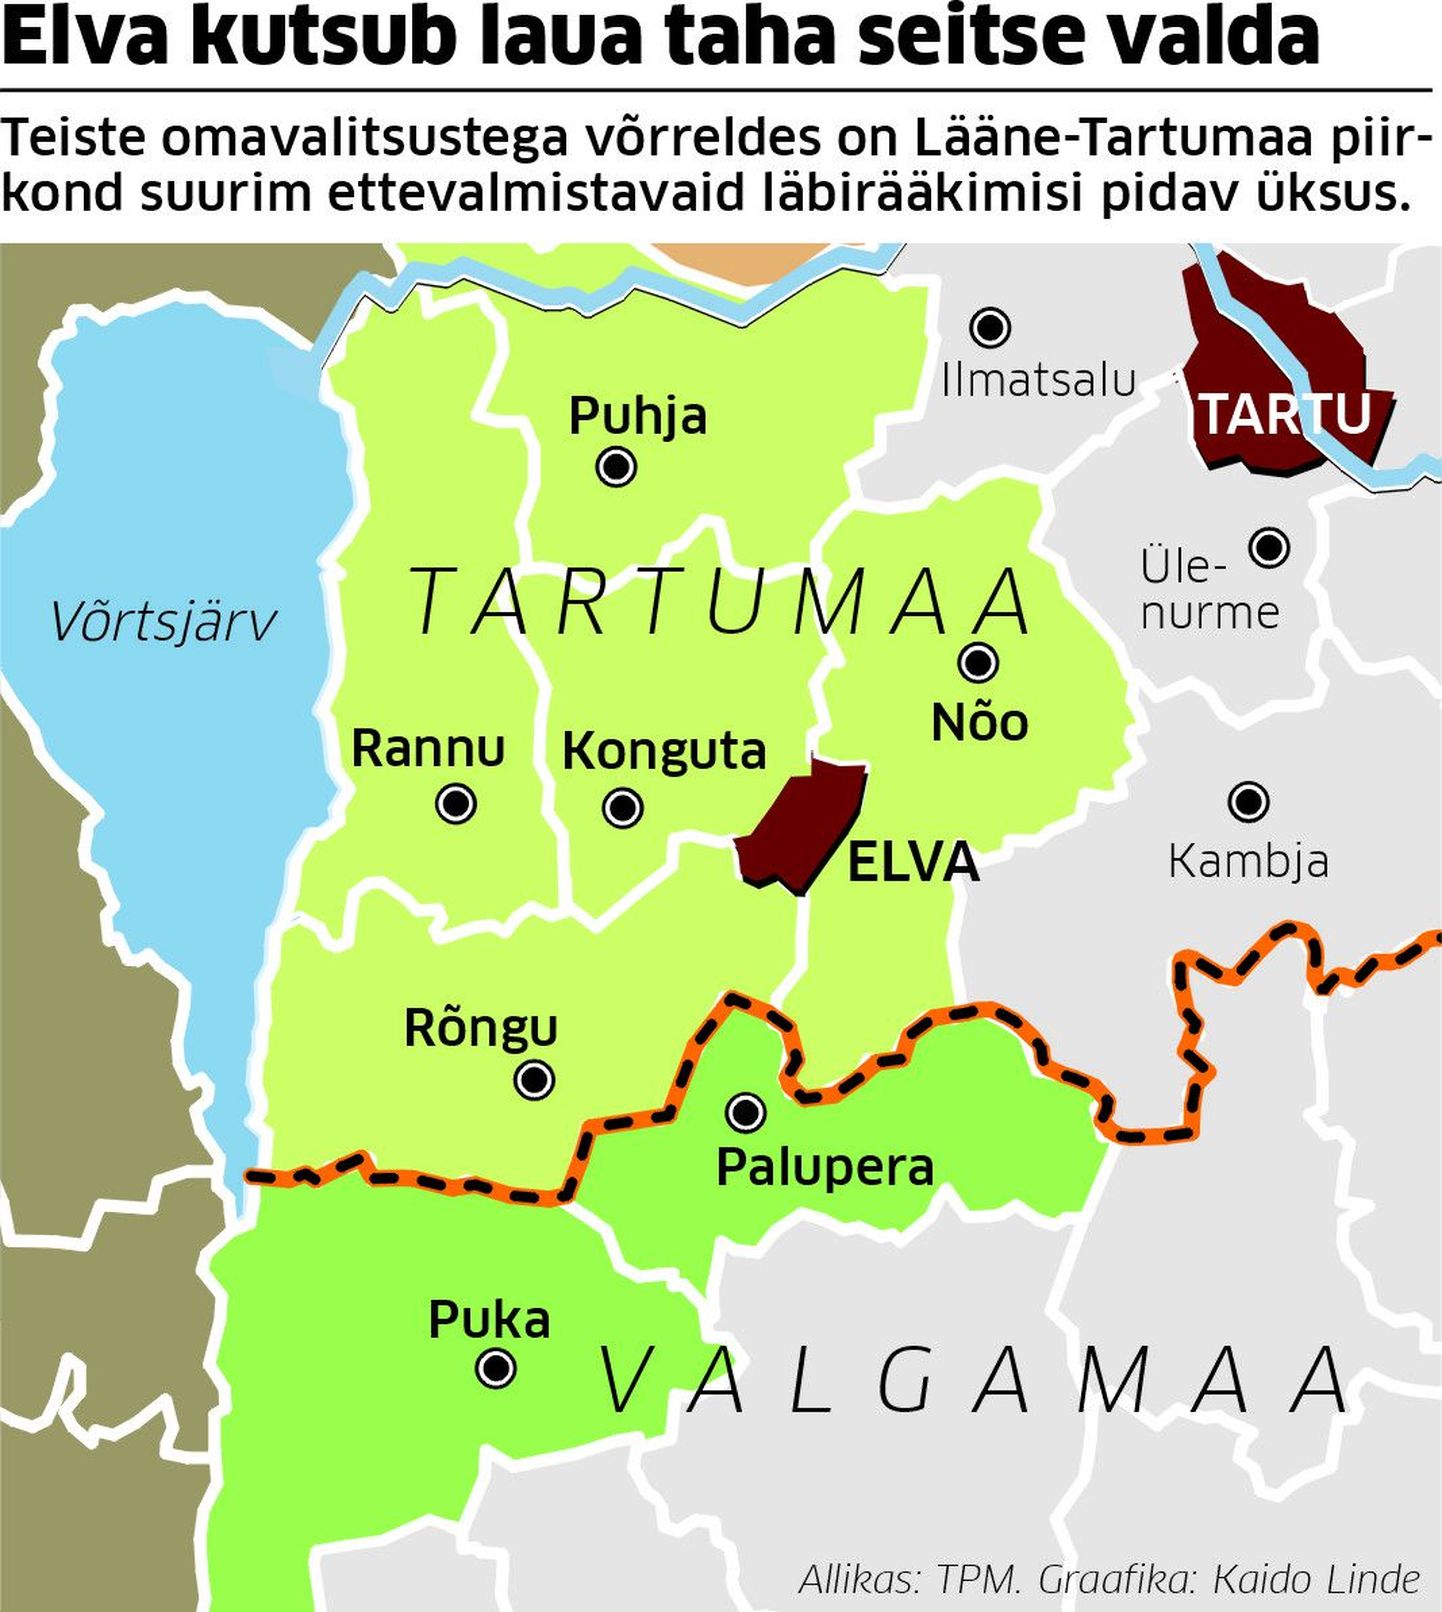 Lääne-Tartumaal ühinemisplaane arutavad omavalitsused.